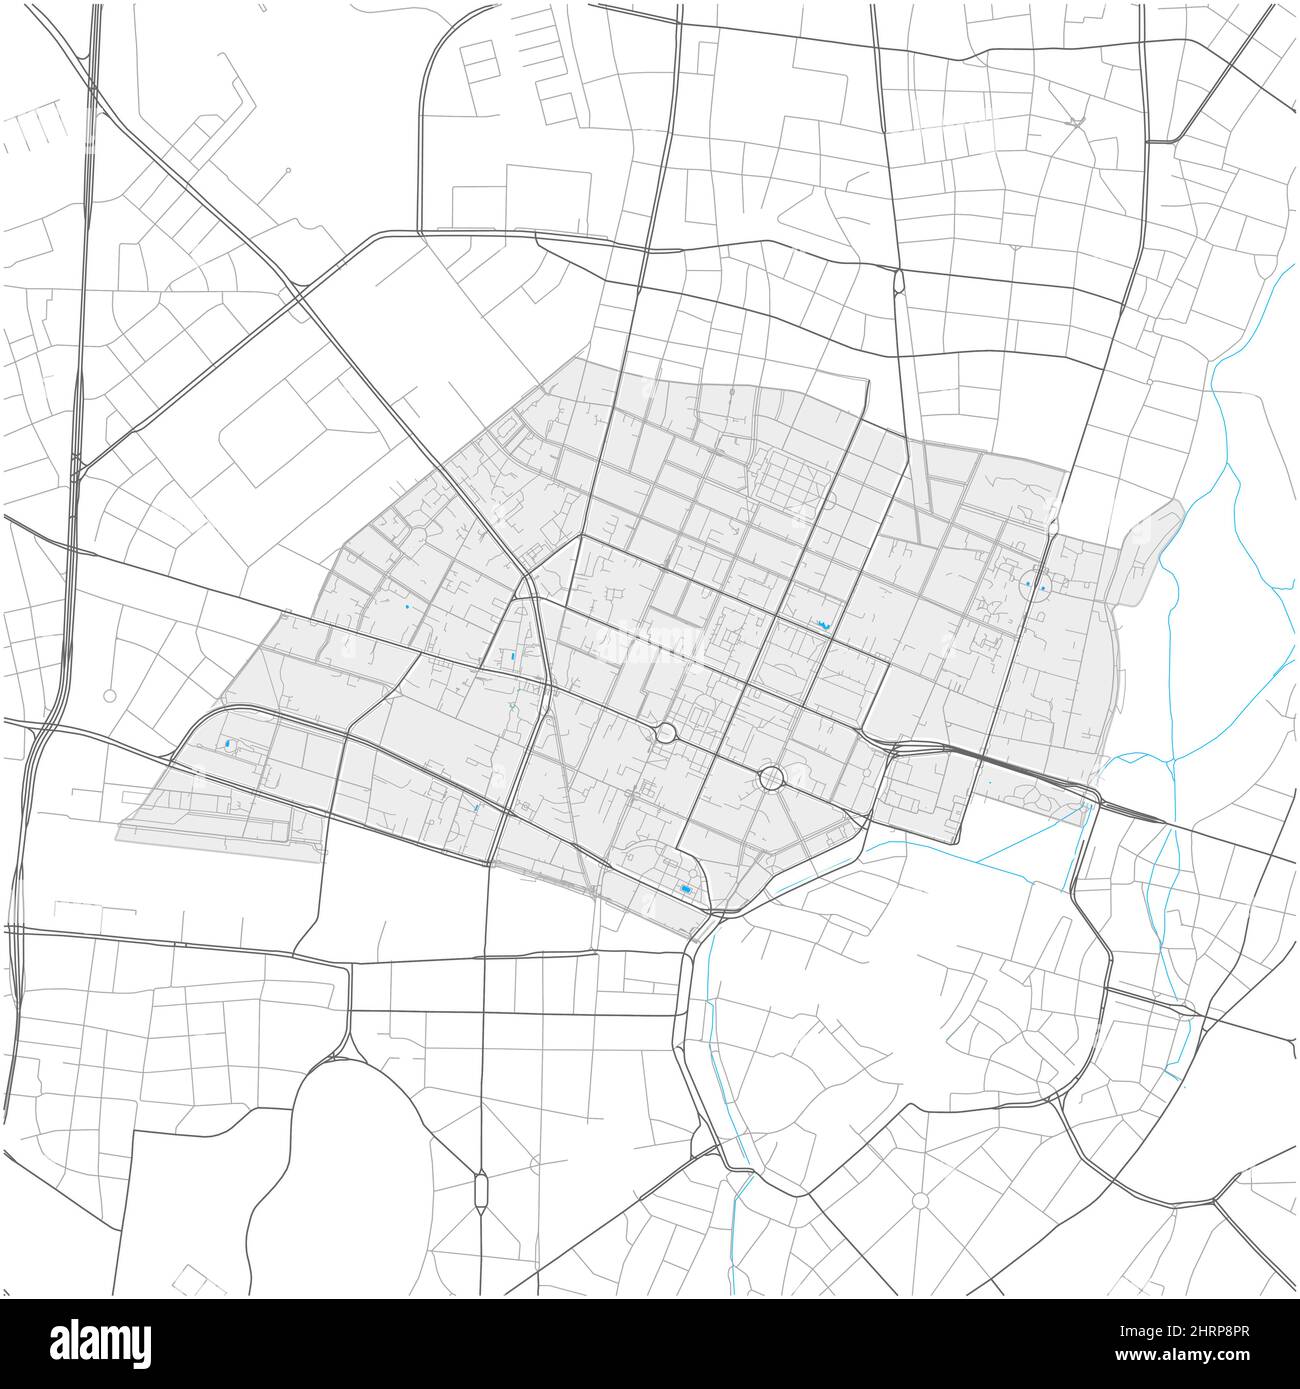 Maxvorstadt, München, DEUTSCHLAND, mappa vettoriale ad alto dettaglio con confini della città e percorsi modificabili. Contorni bianchi per le strade principali. Molti percorsi più piccoli. Illustrazione Vettoriale